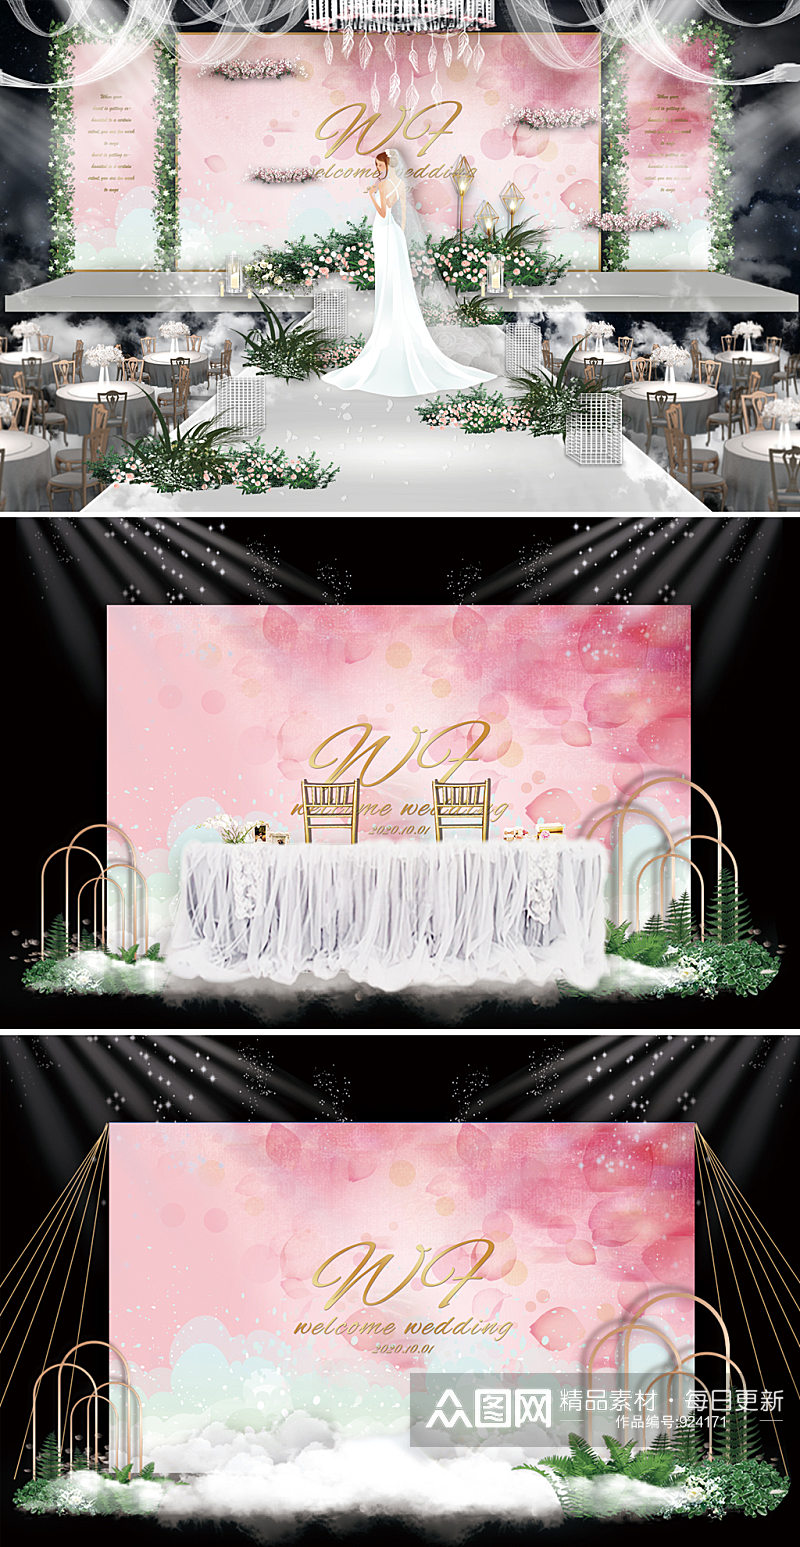 唯美婚礼舞台效果图背景板素材